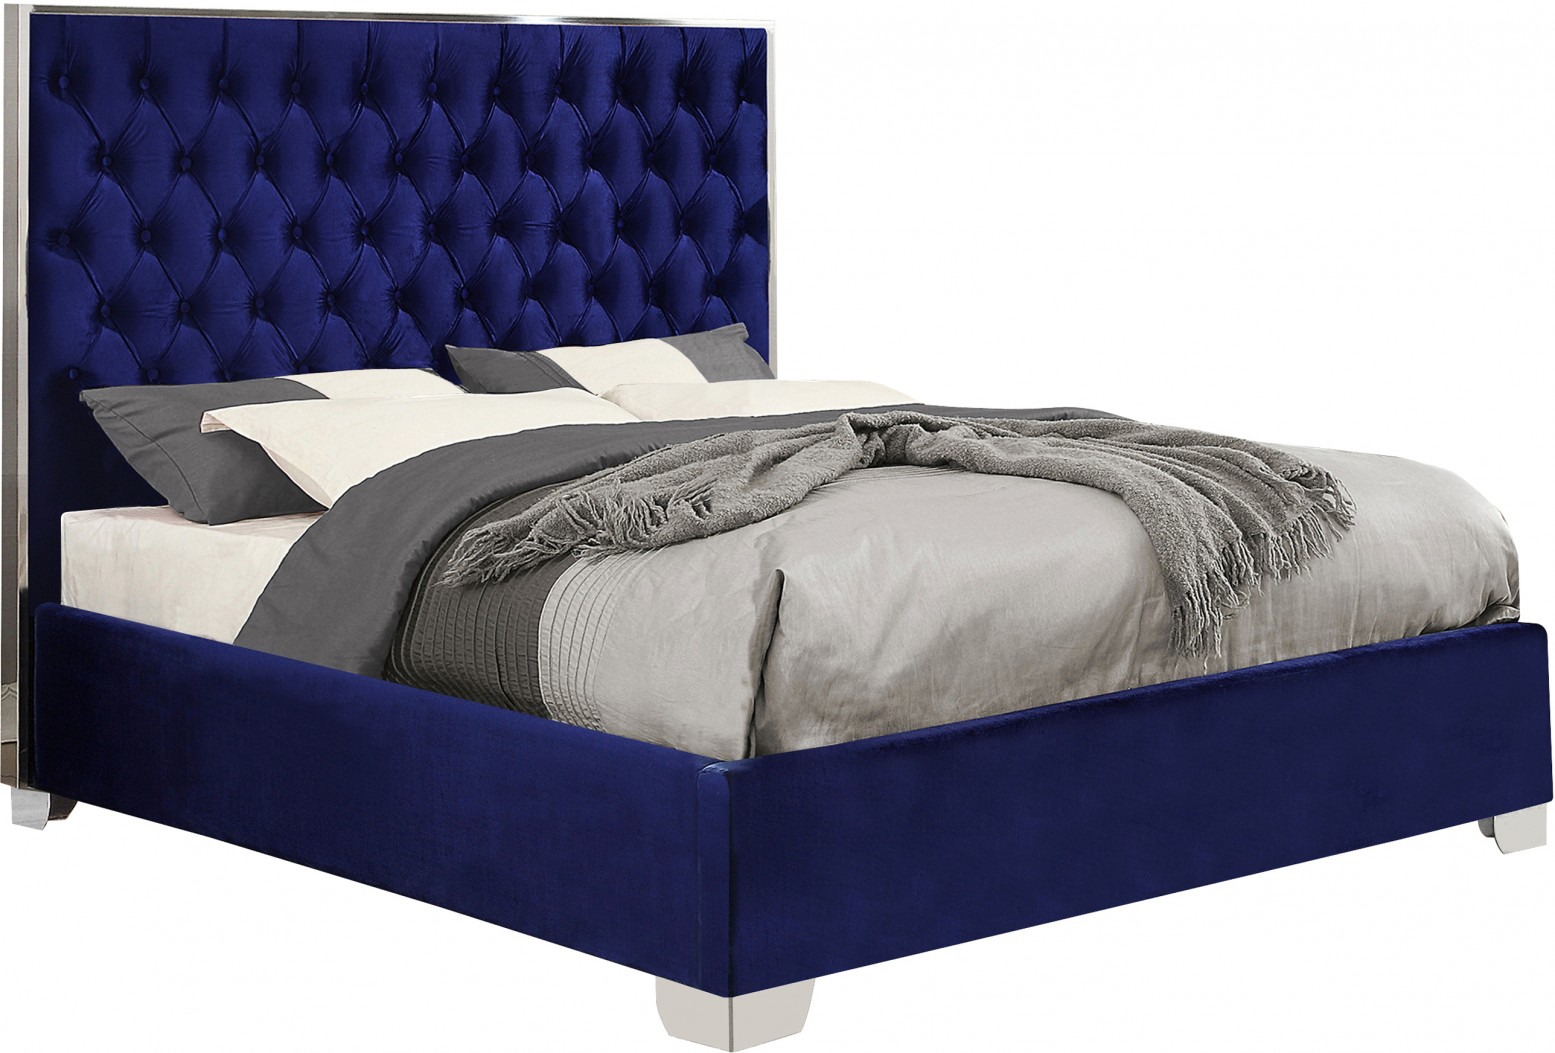 Lexi Velvet Queen Size Bed, Navy Buy Online at Best Price